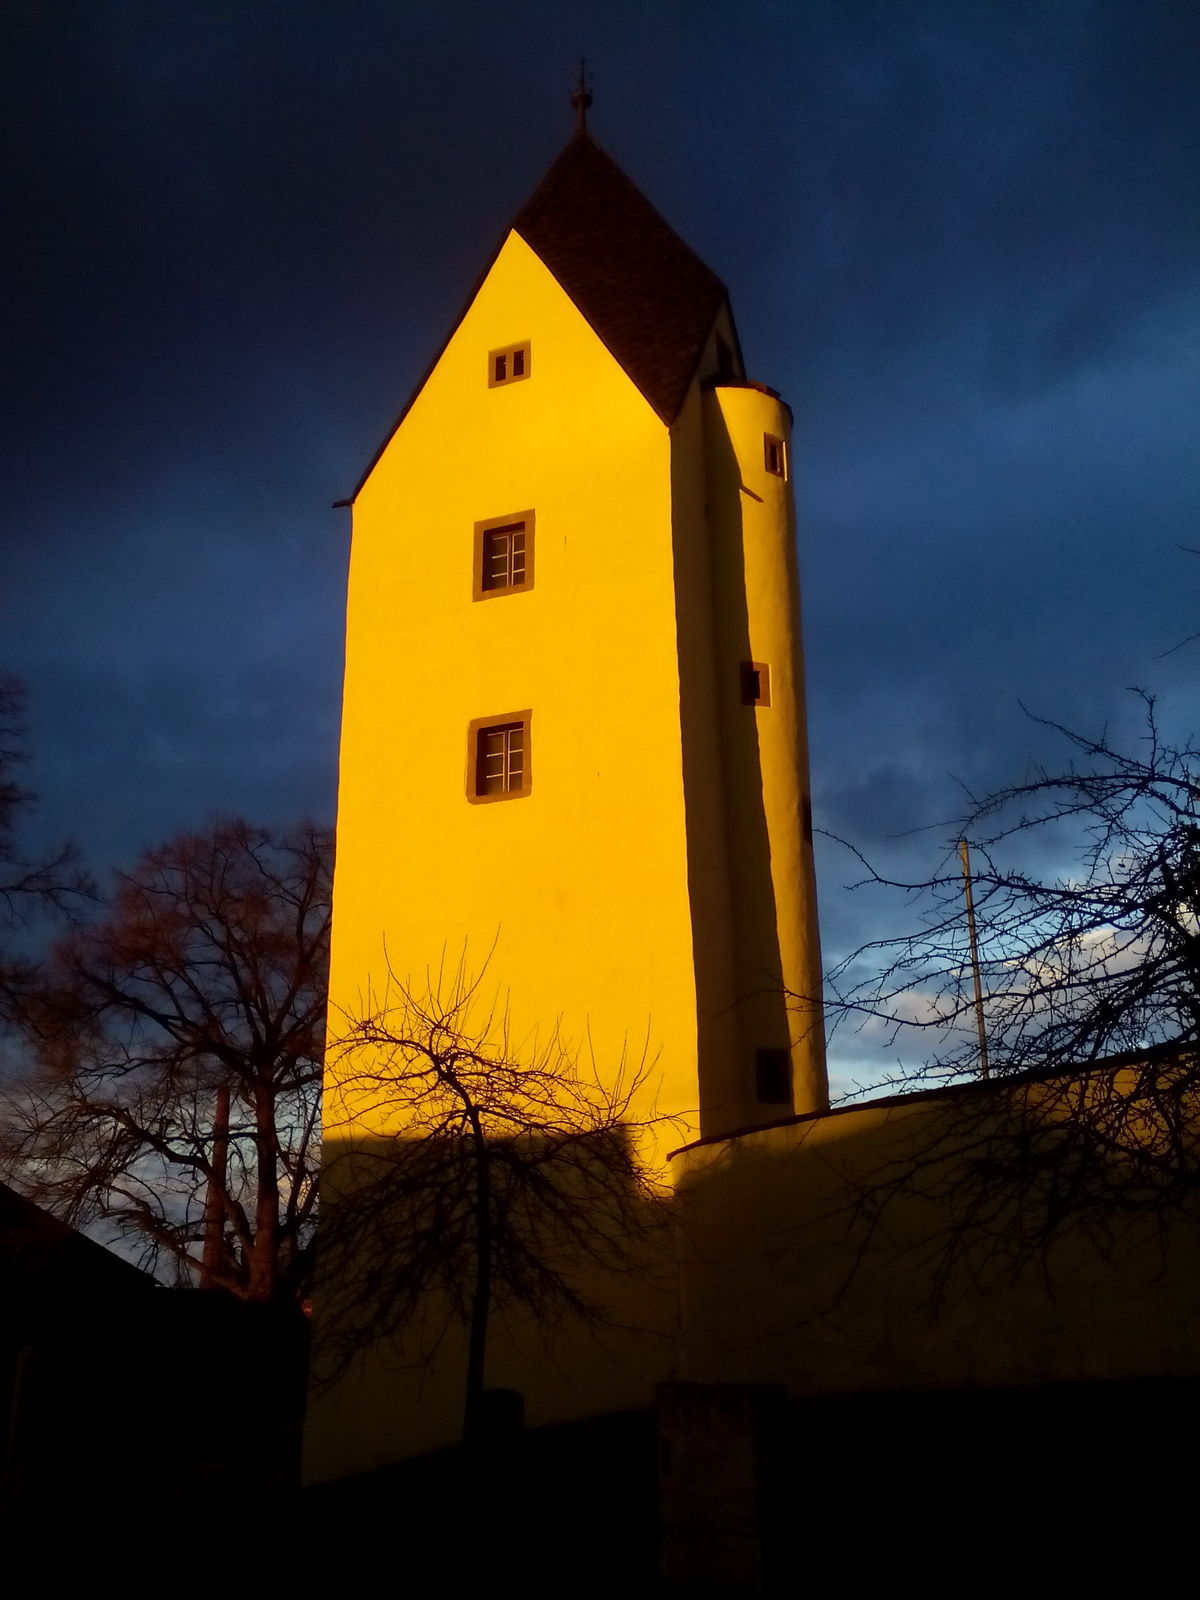 fotka věže březen2016 žlutá.jpg